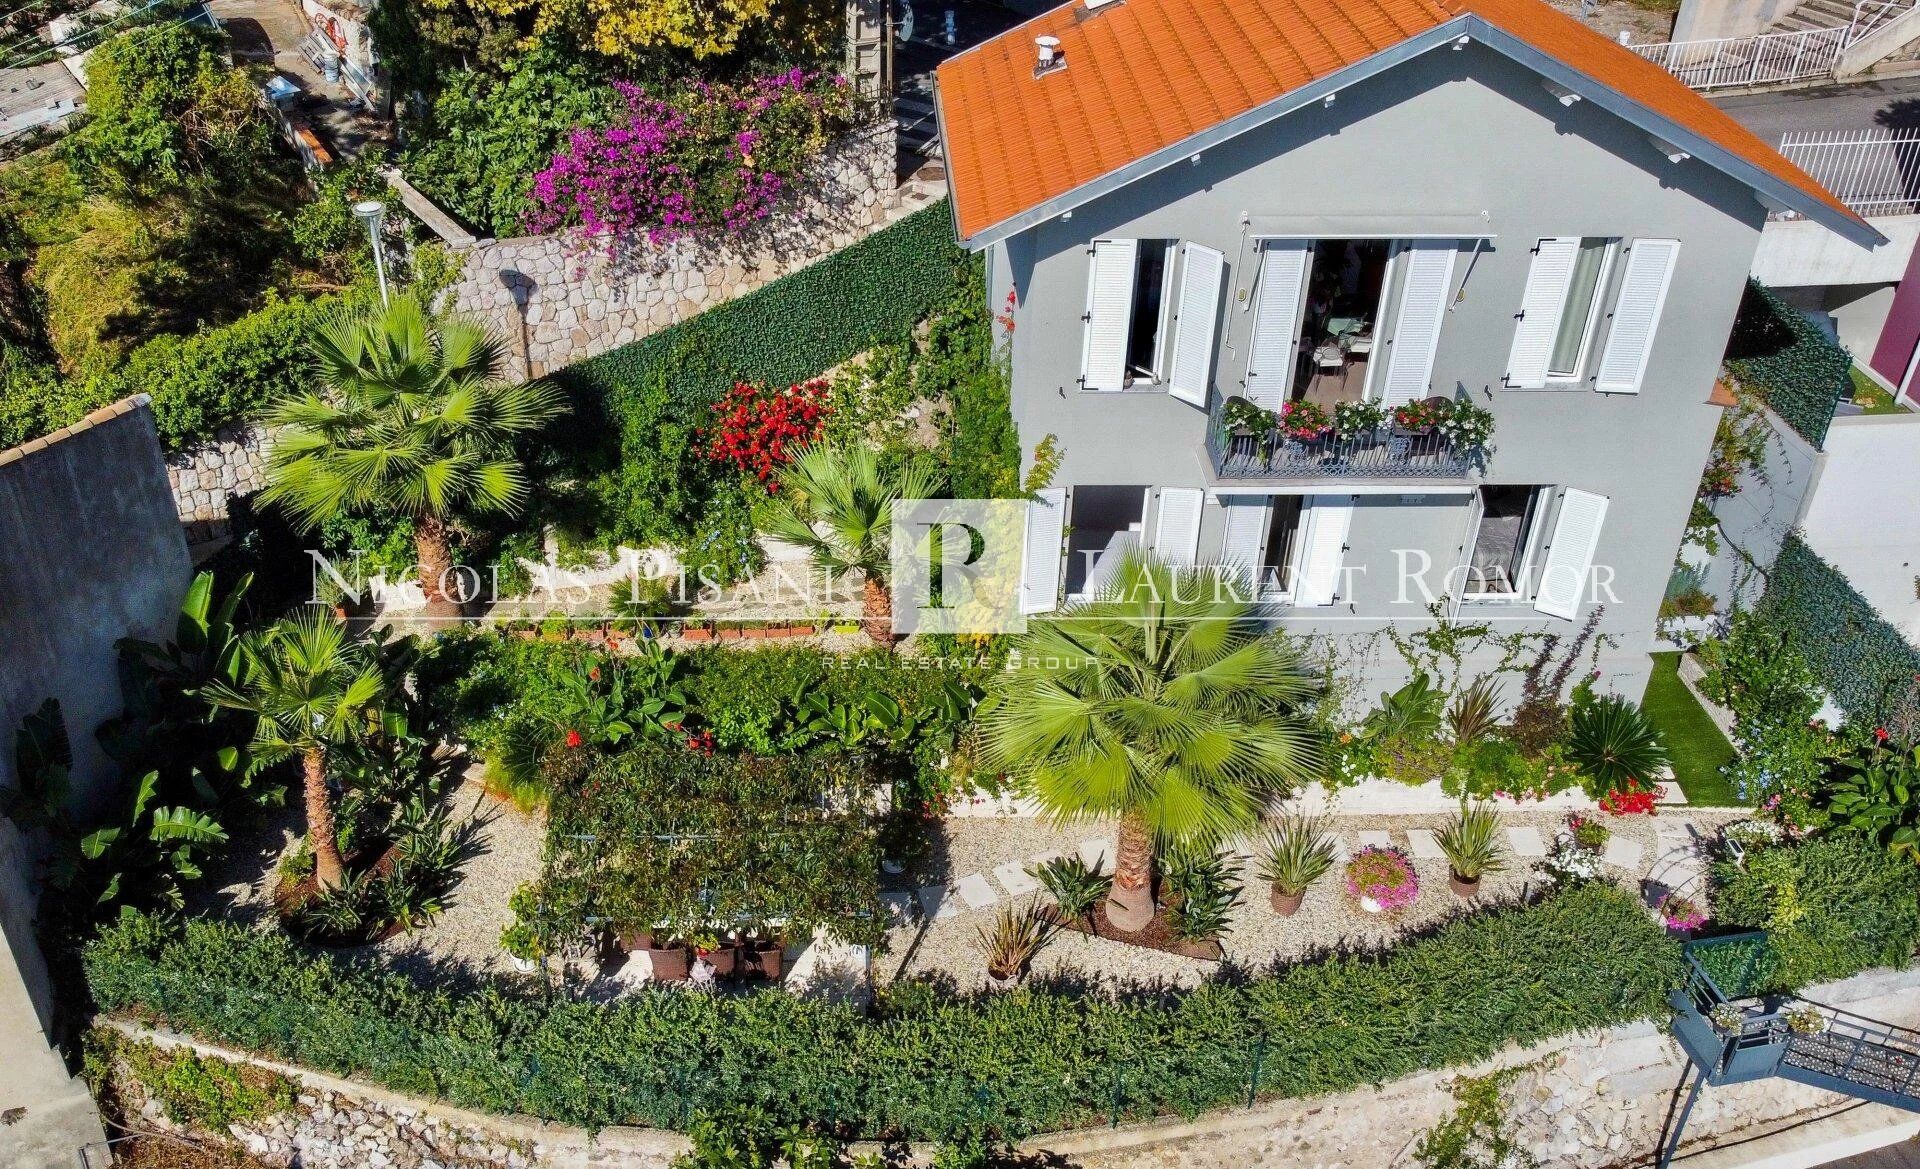 Vente Villa 110 m² à Beausoleil 1 500 000 €